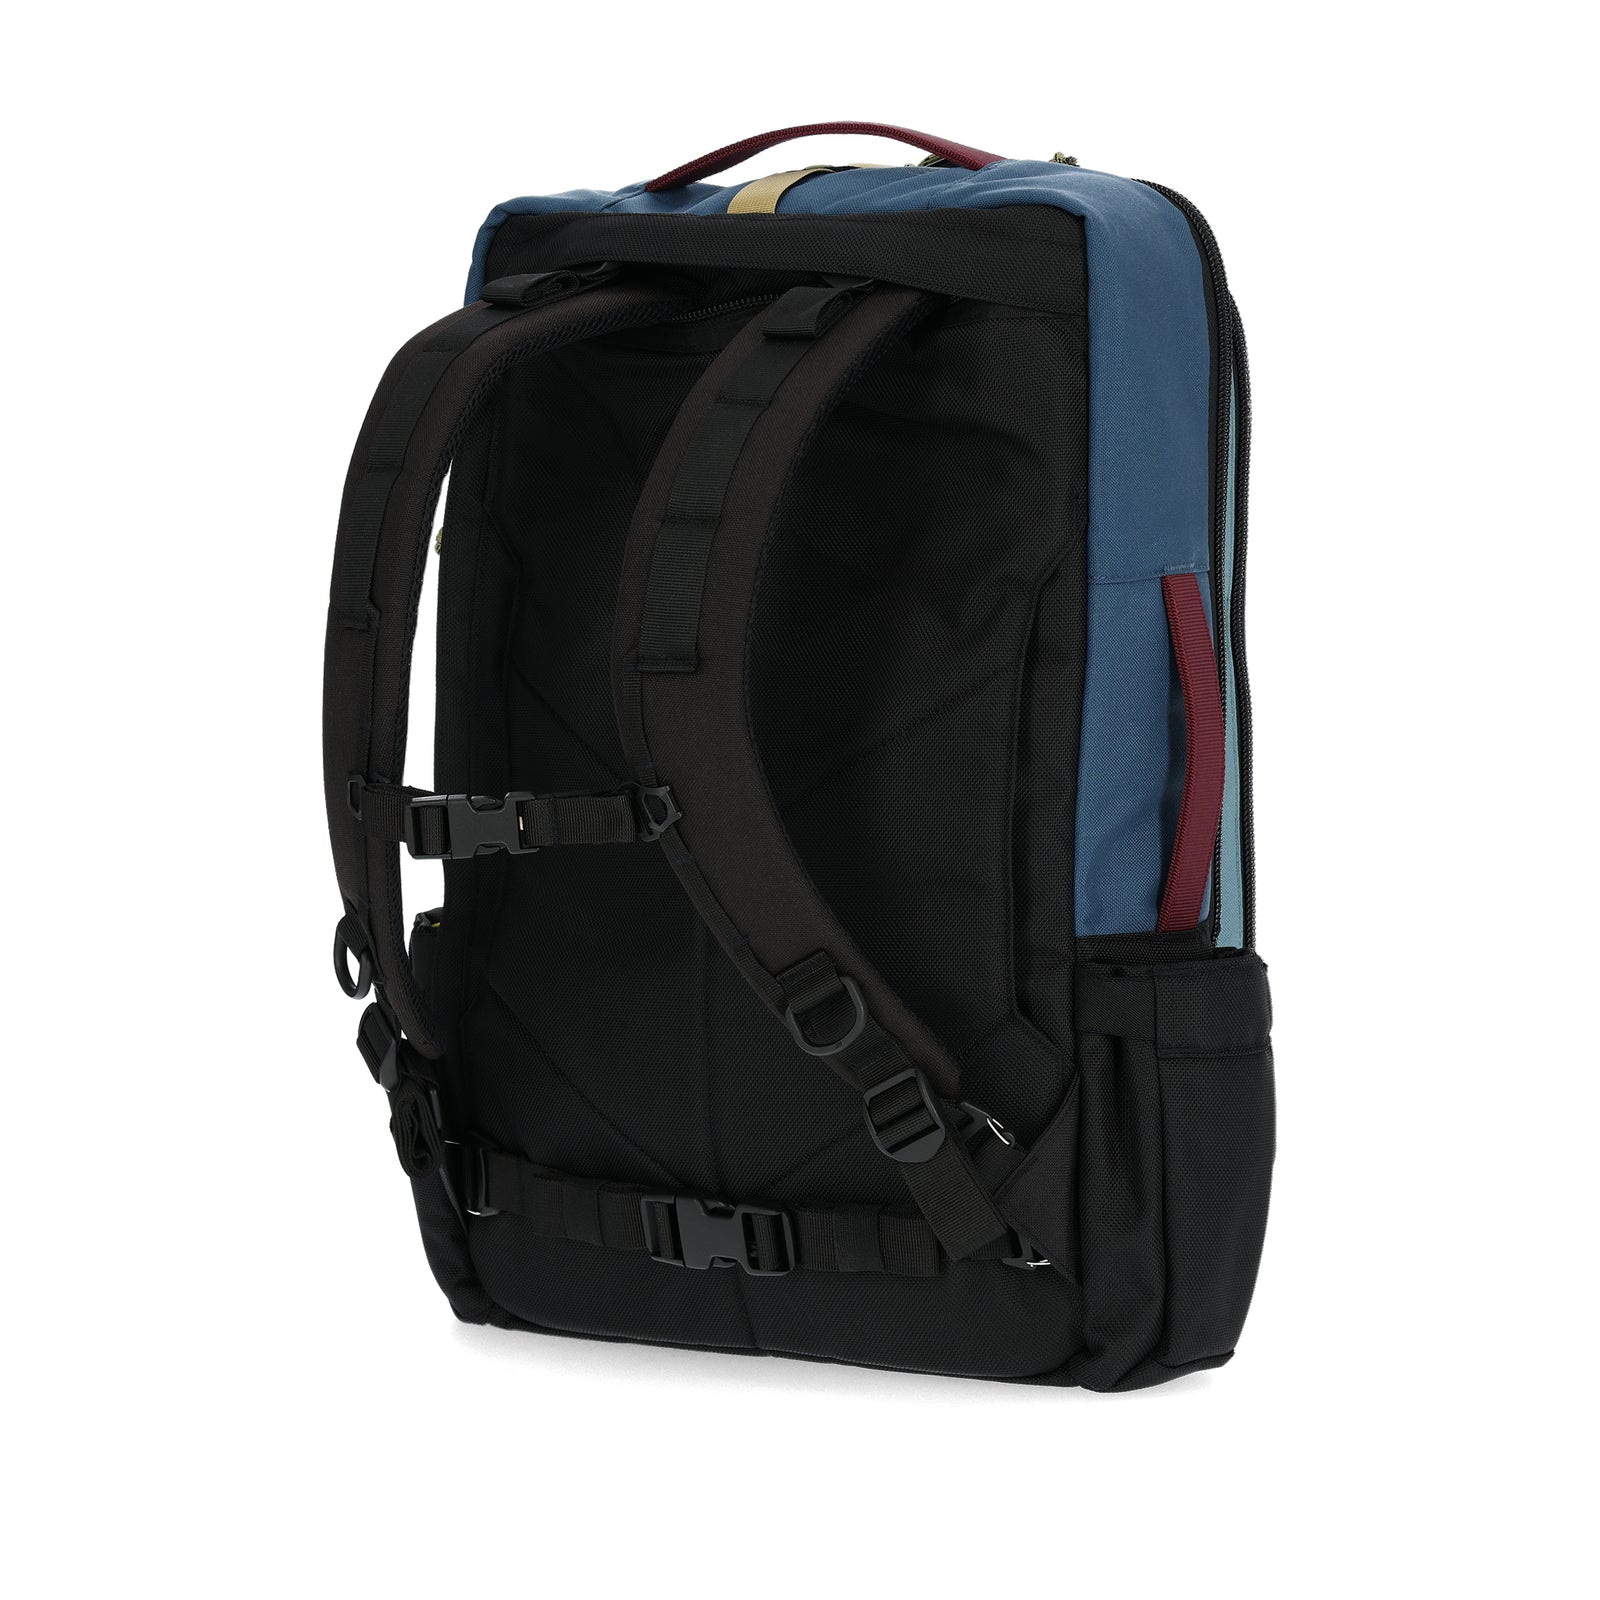 Back View of Topo Designs Global Travel Bag 30L  in "Dark Denim / Burgundy"